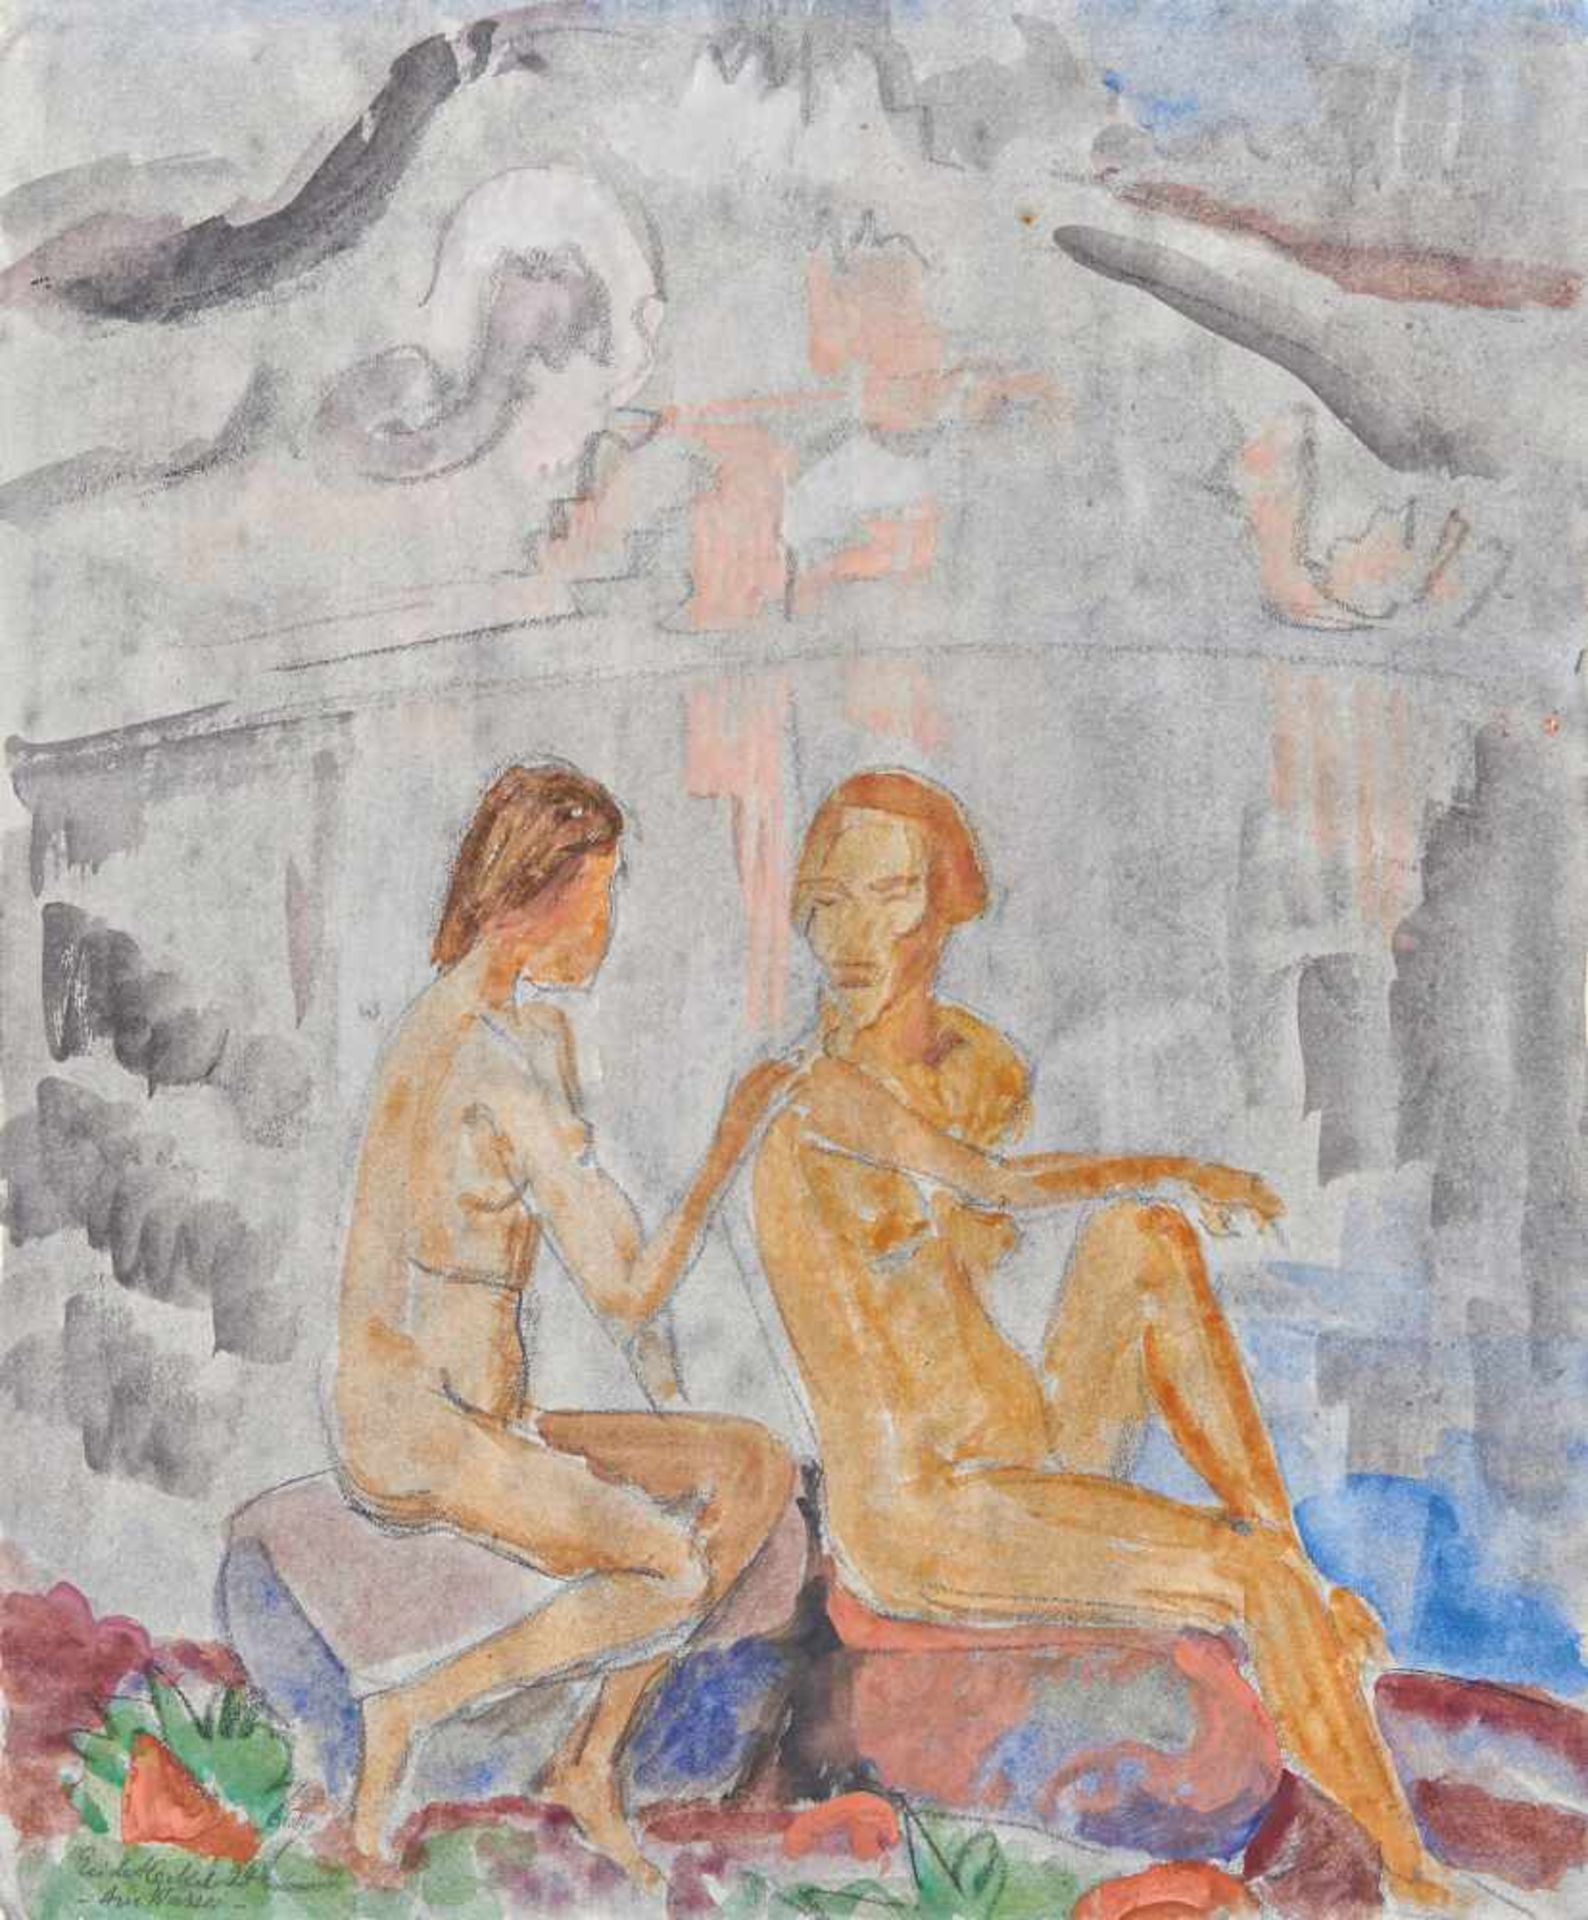 Heckel, Erich1883 Döbeln - 1970 Radolfzell"Am Wasser". 1924. Watercolour and charcoal on vellum.